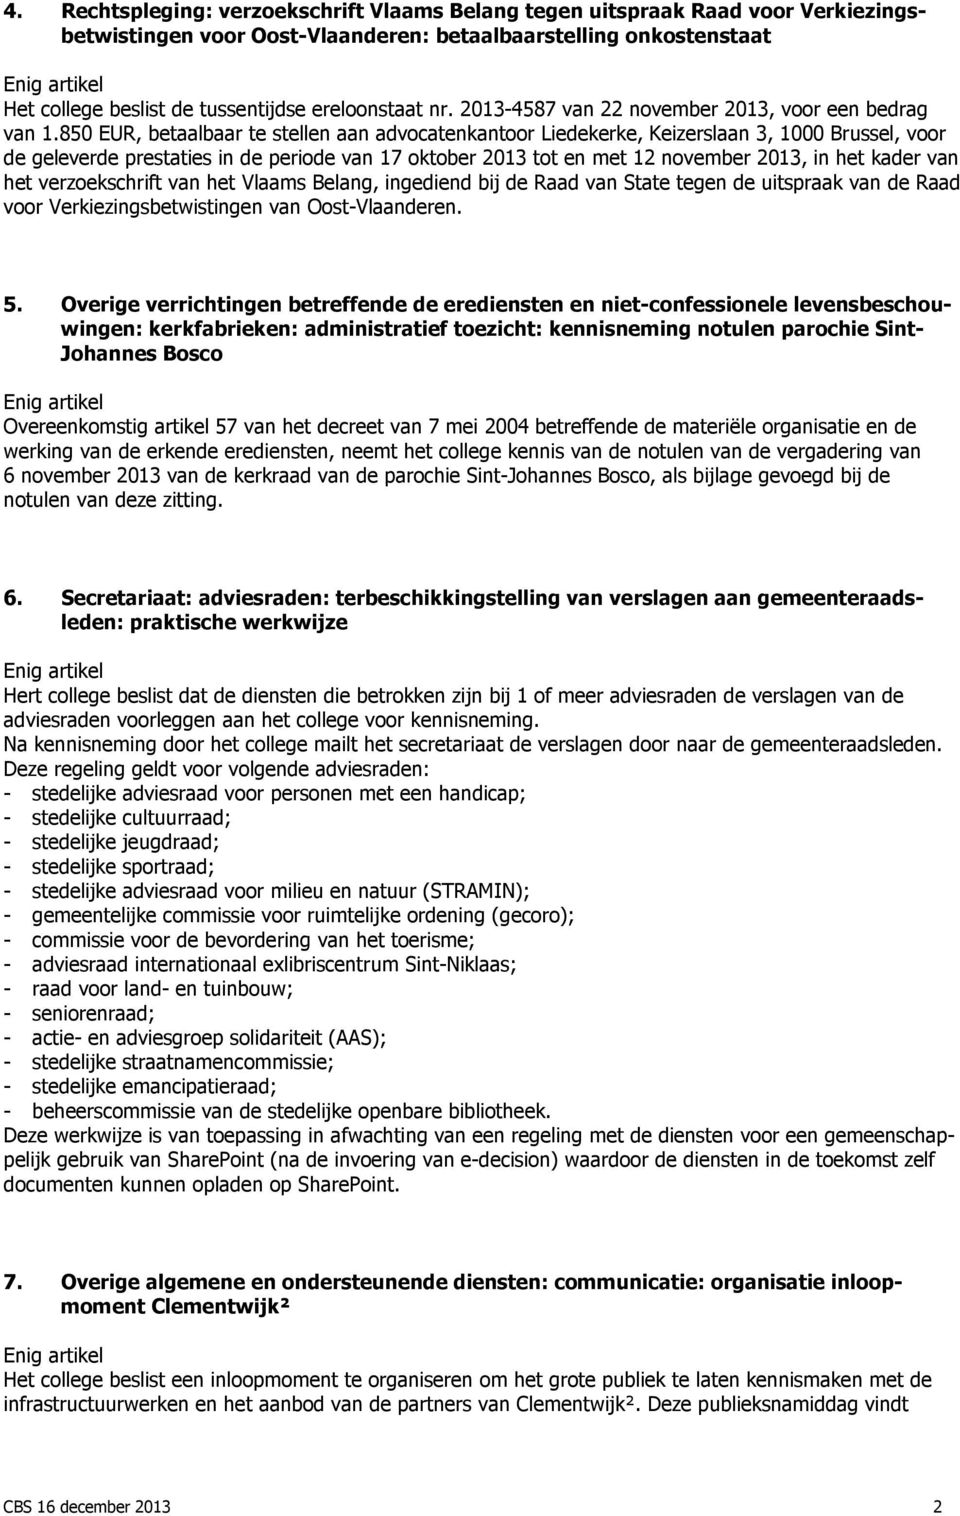 850 EUR, betaalbaar te stellen aan advocatenkantoor Liedekerke, Keizerslaan 3, 1000 Brussel, voor de geleverde prestaties in de periode van 17 oktober 2013 tot en met 12 november 2013, in het kader